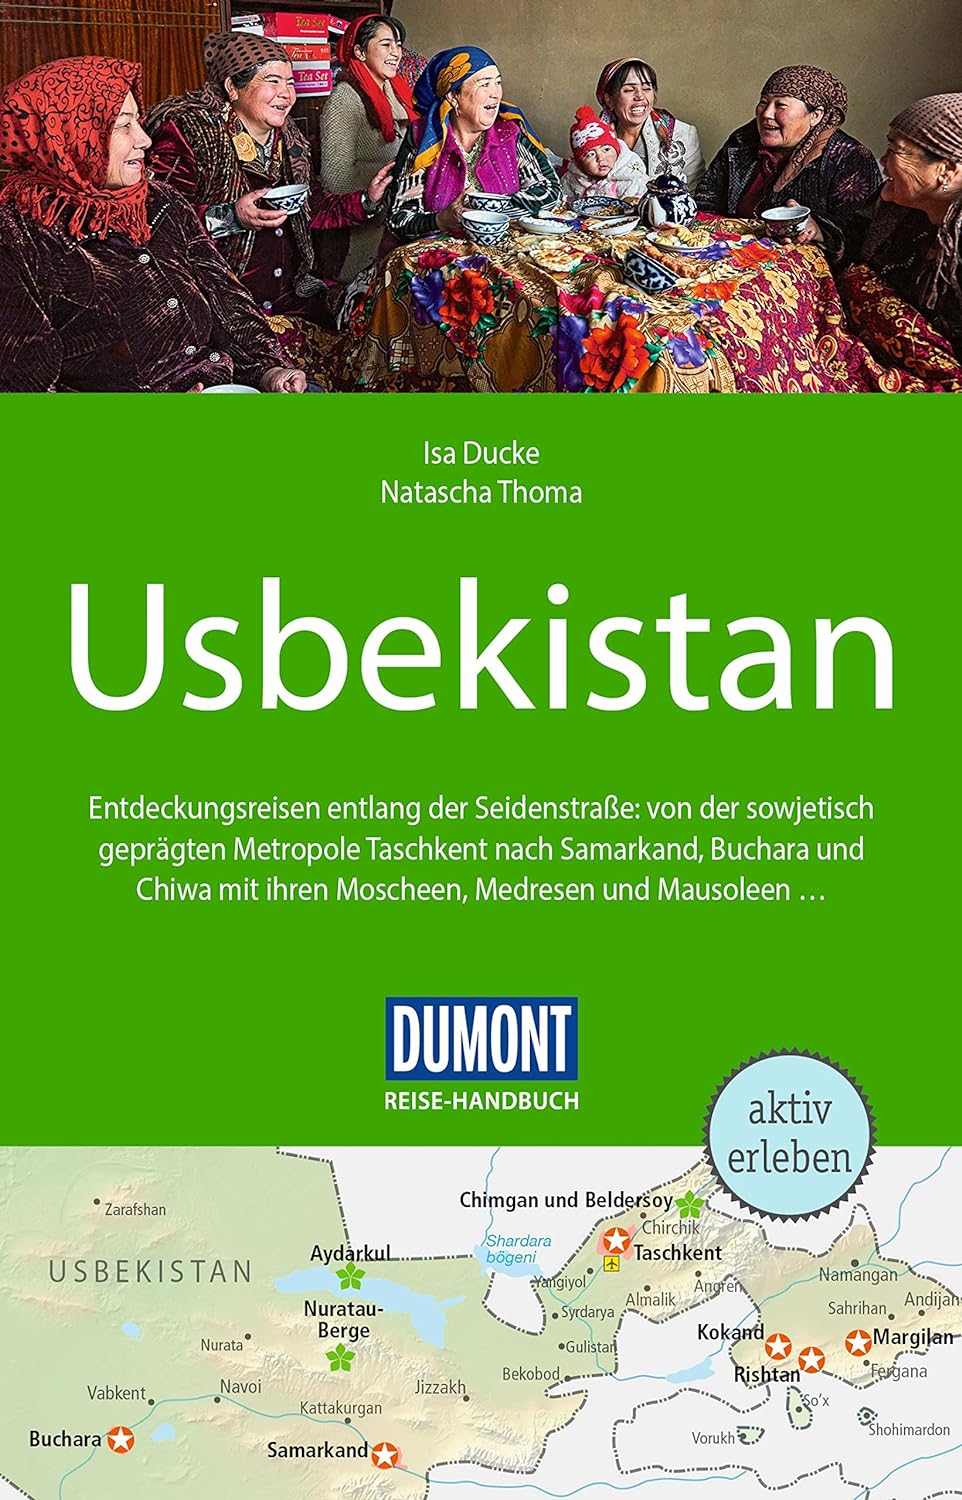  DuMont Reise-Handbuch Reiseführer Usbekistan von Natascha Thoma und Isa Ducke